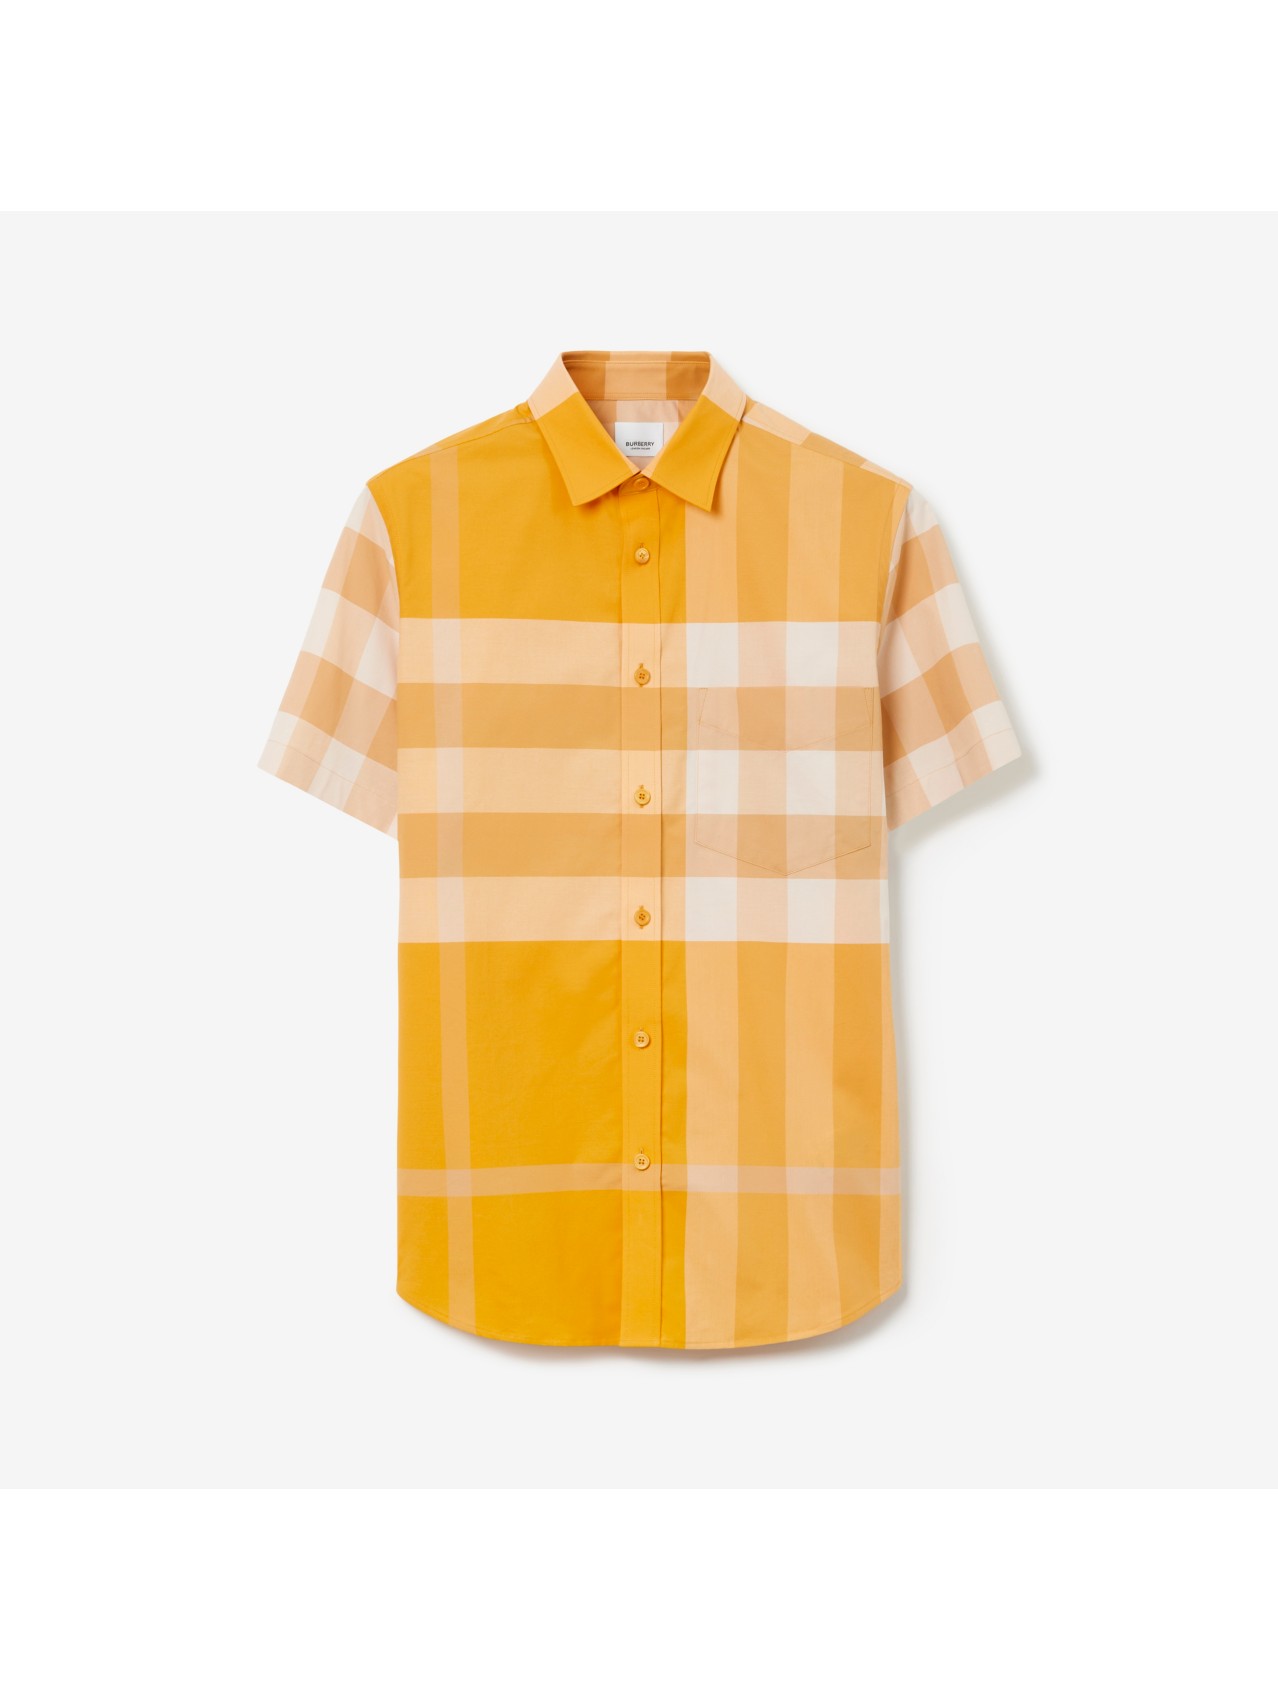 Camisas para hombre | Burberry® oficial